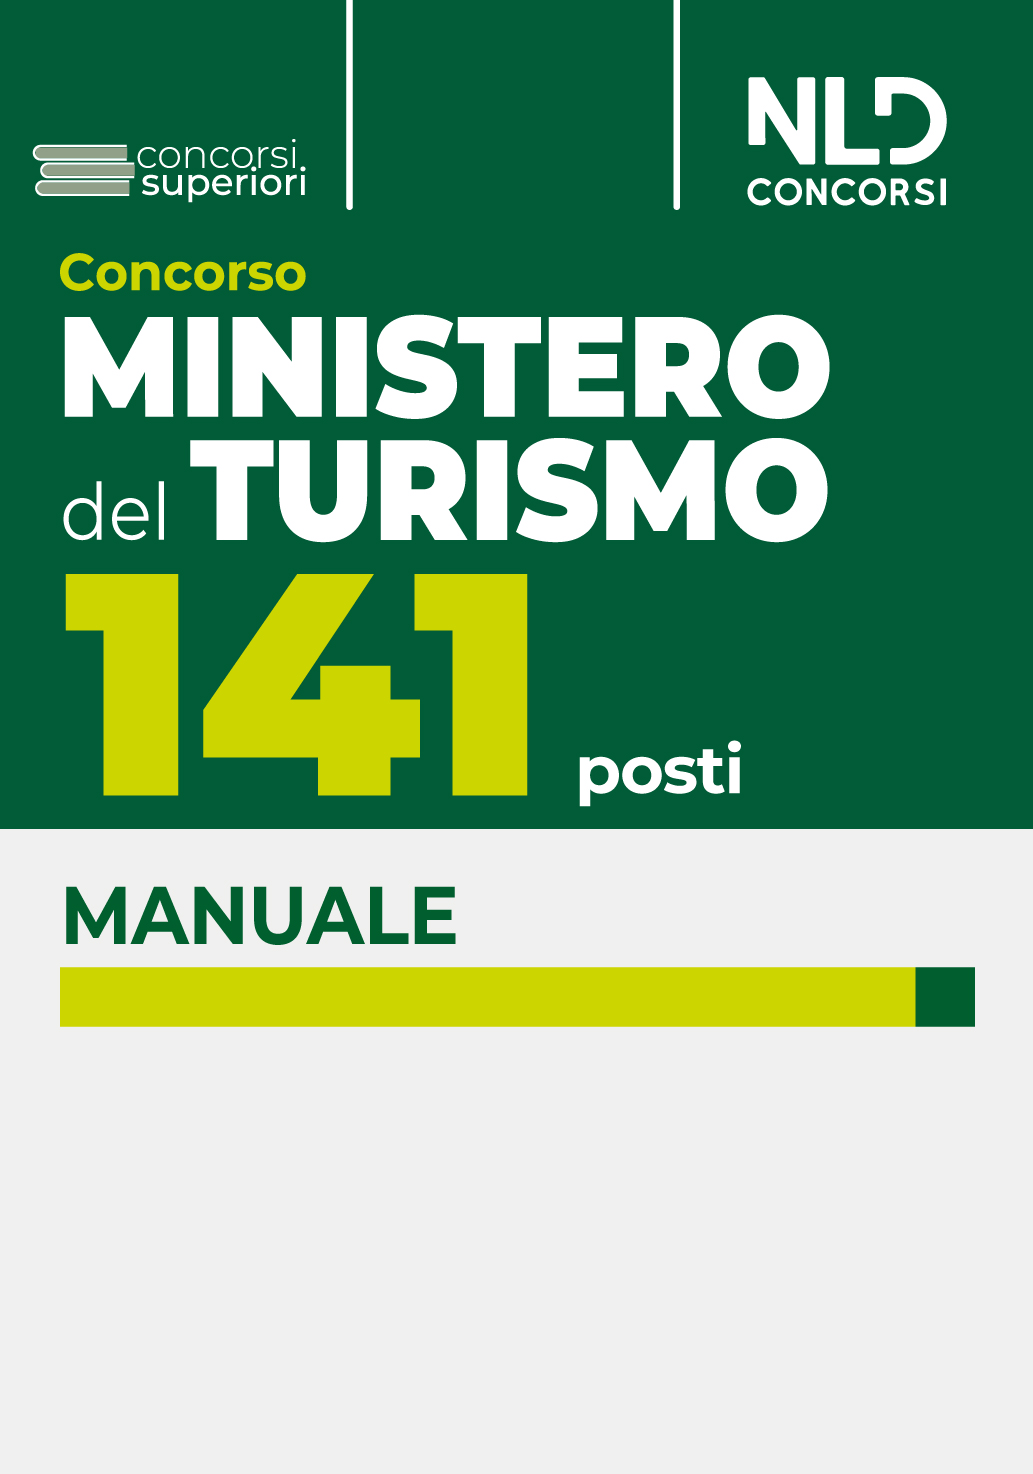 Concorso 141 Ministero del Turismo